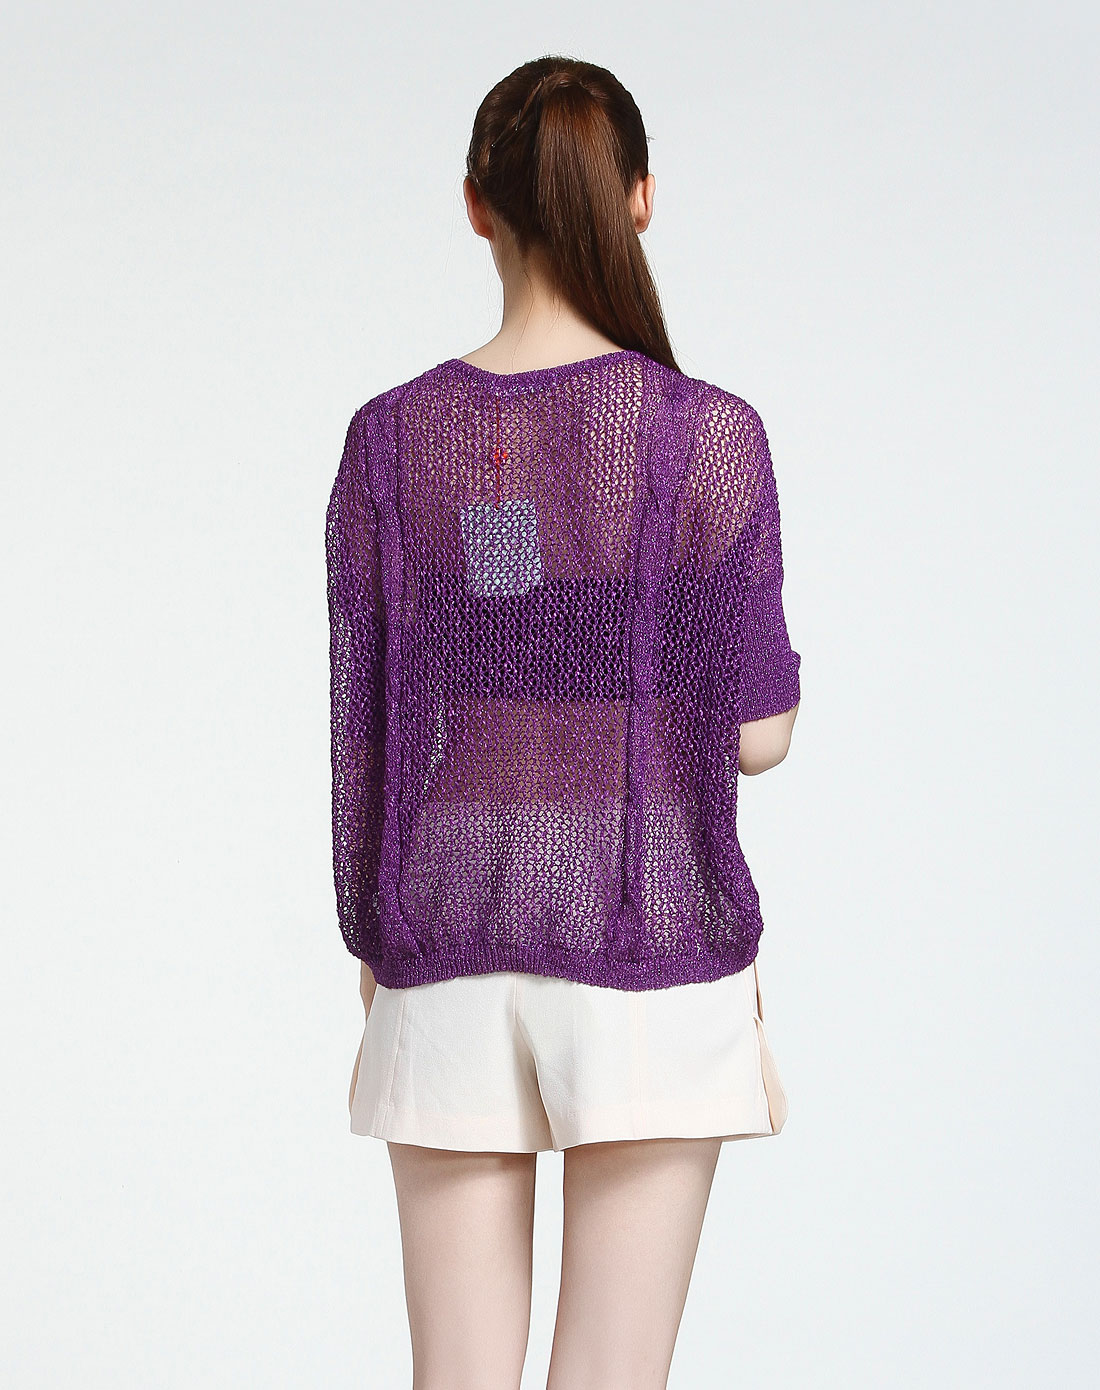 > 镂空时尚闪亮紫色中袖针织衫